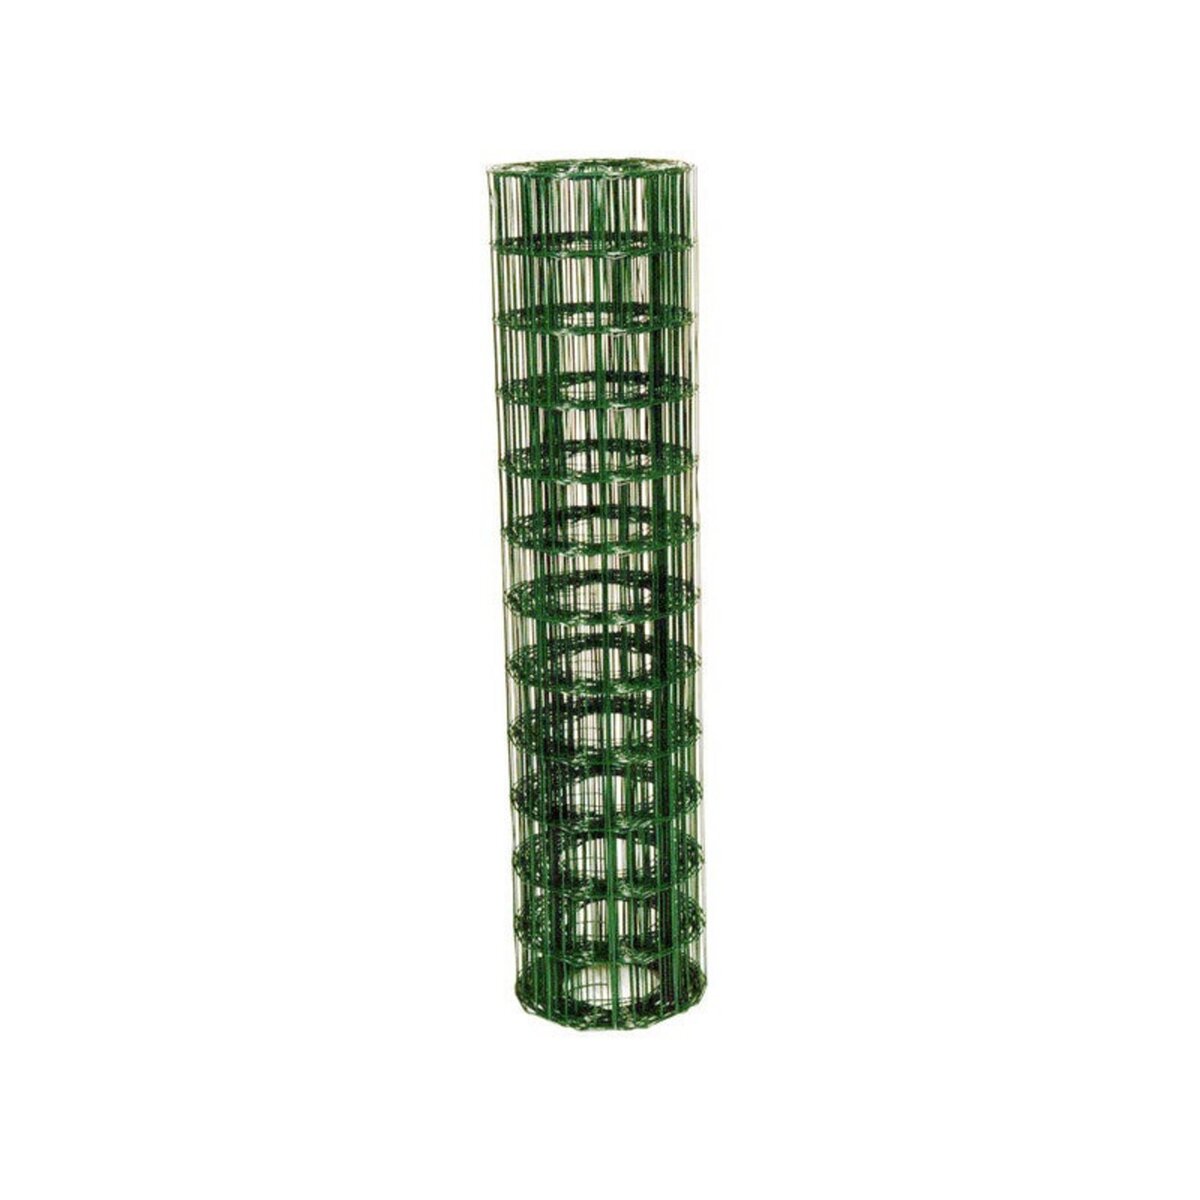 CENTRALE BRICO Grillage rouleau soudé vert, H.1.2 x l.20 m, maille 100X100